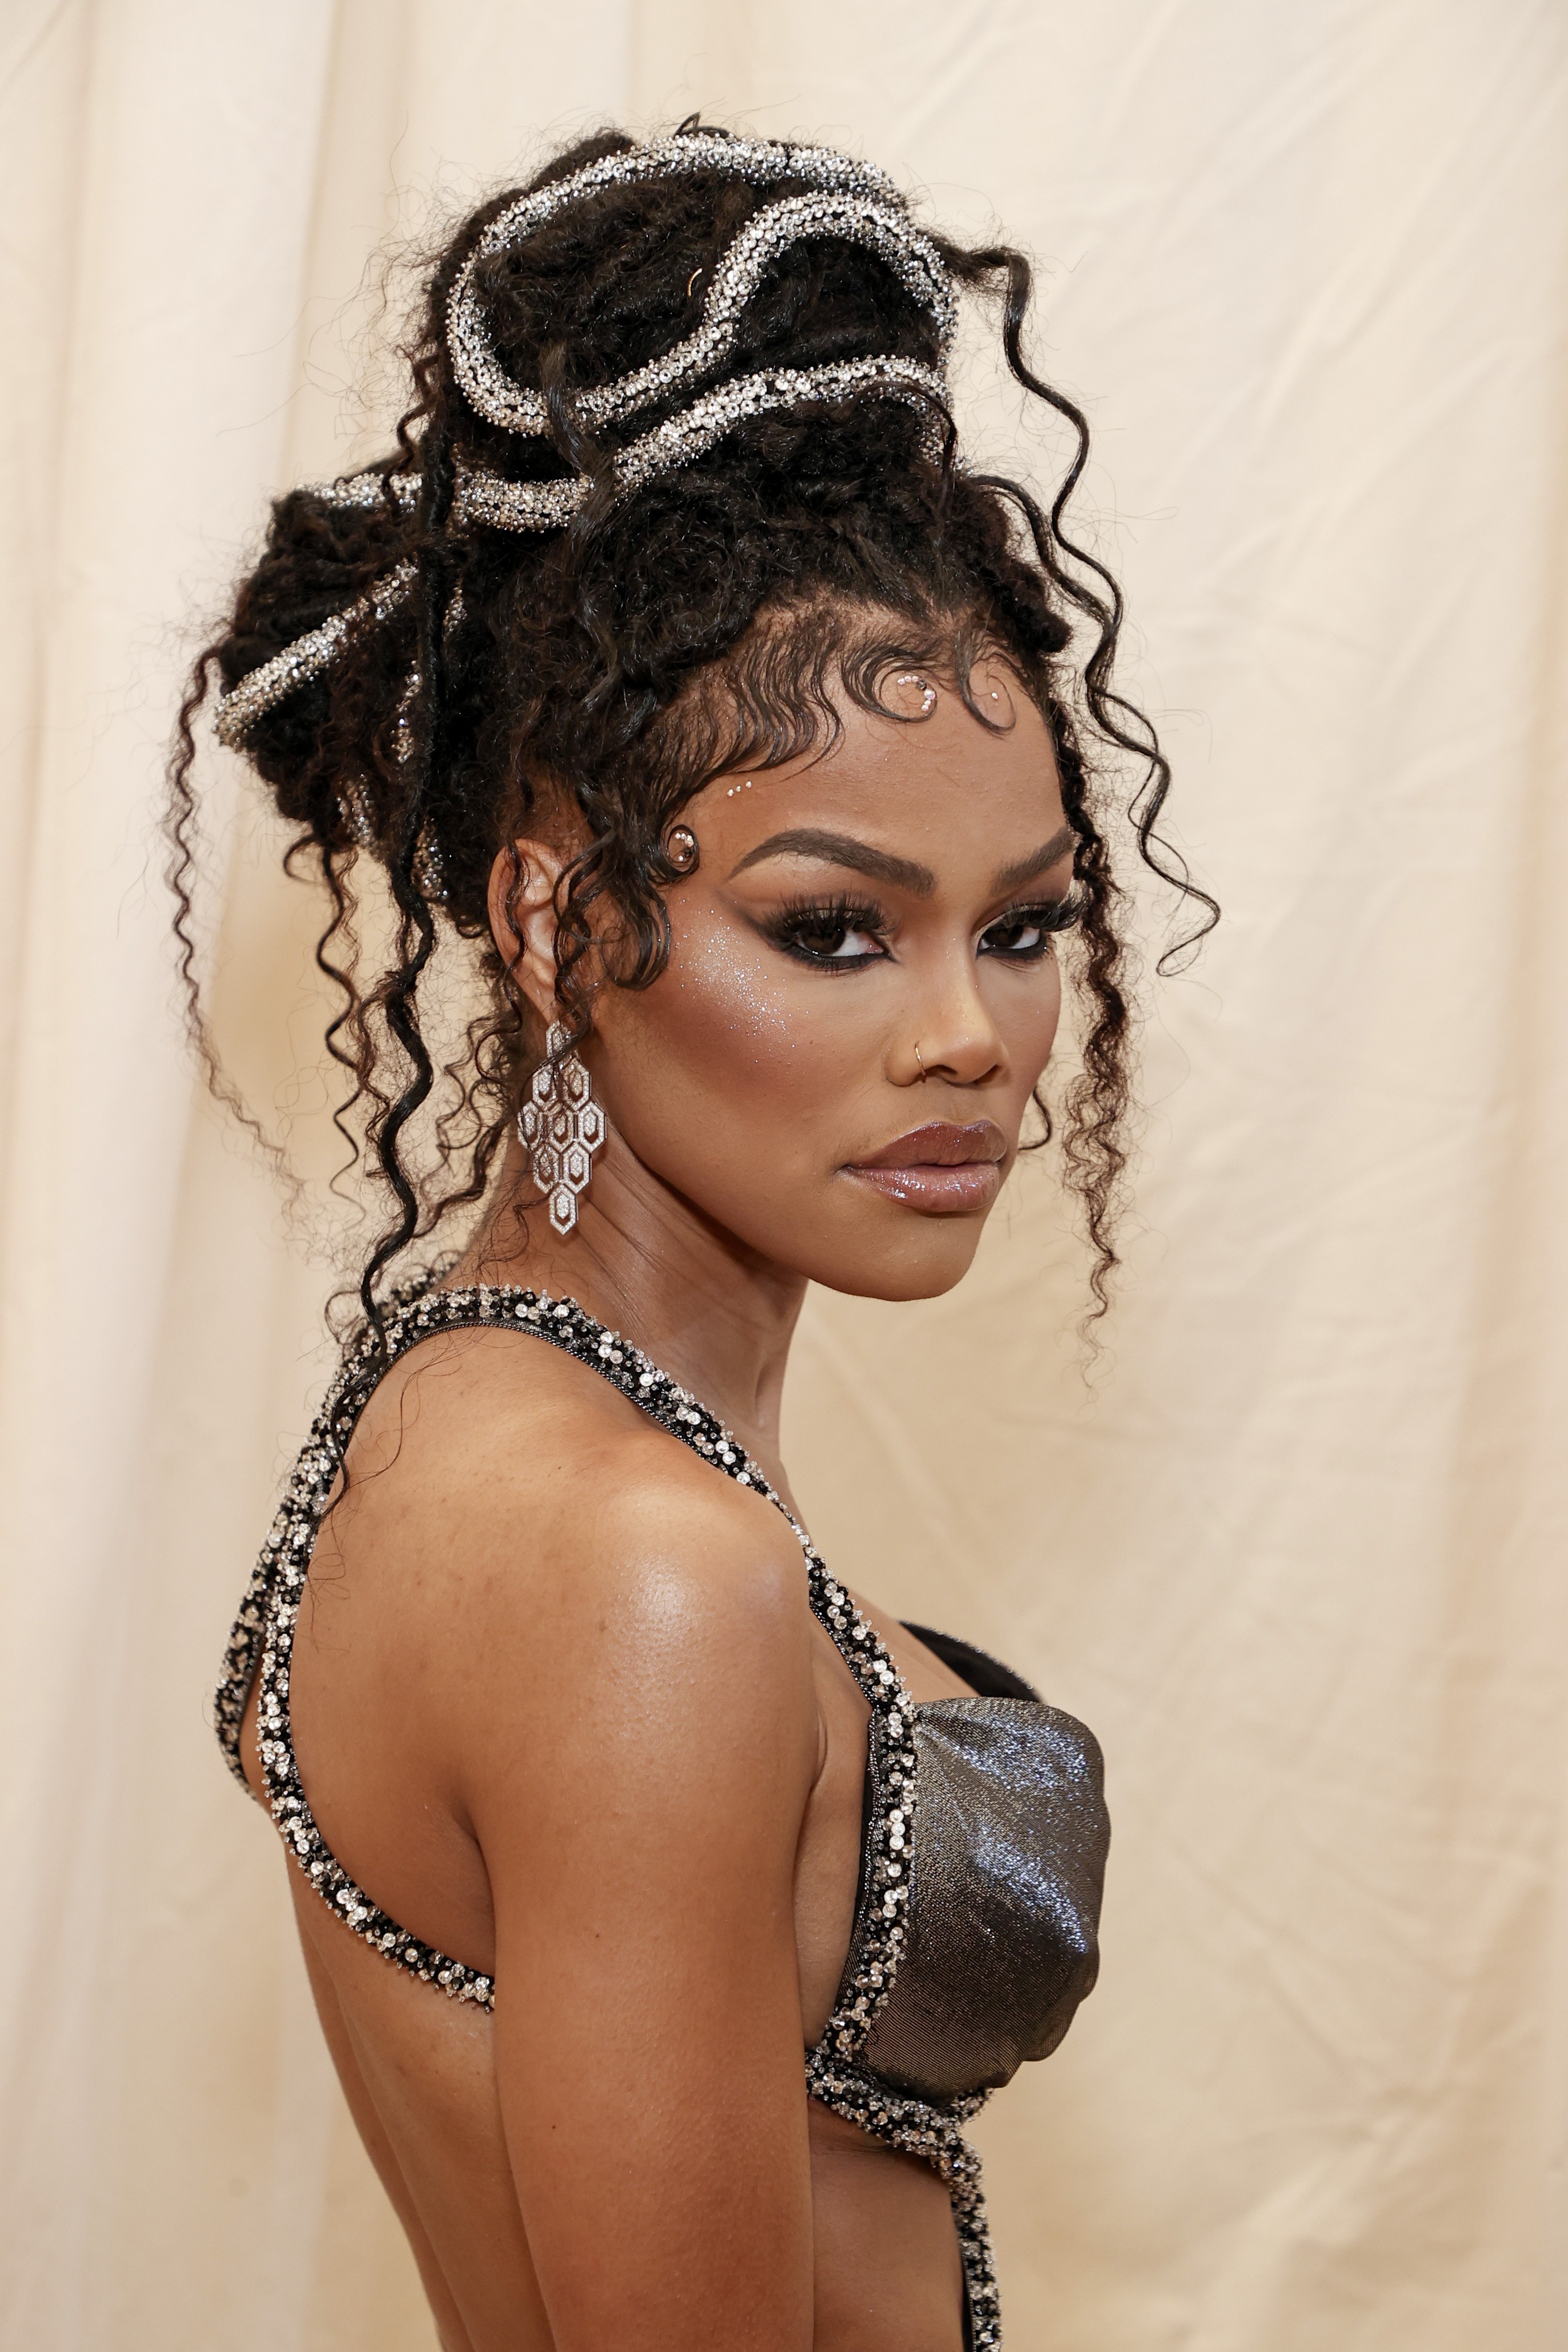 A cantora Teyana Taylor foi com um dos cabelos mais interessantes da noite, cheio de texturas, uma verdadeira escultura (Foto: Getty Images)